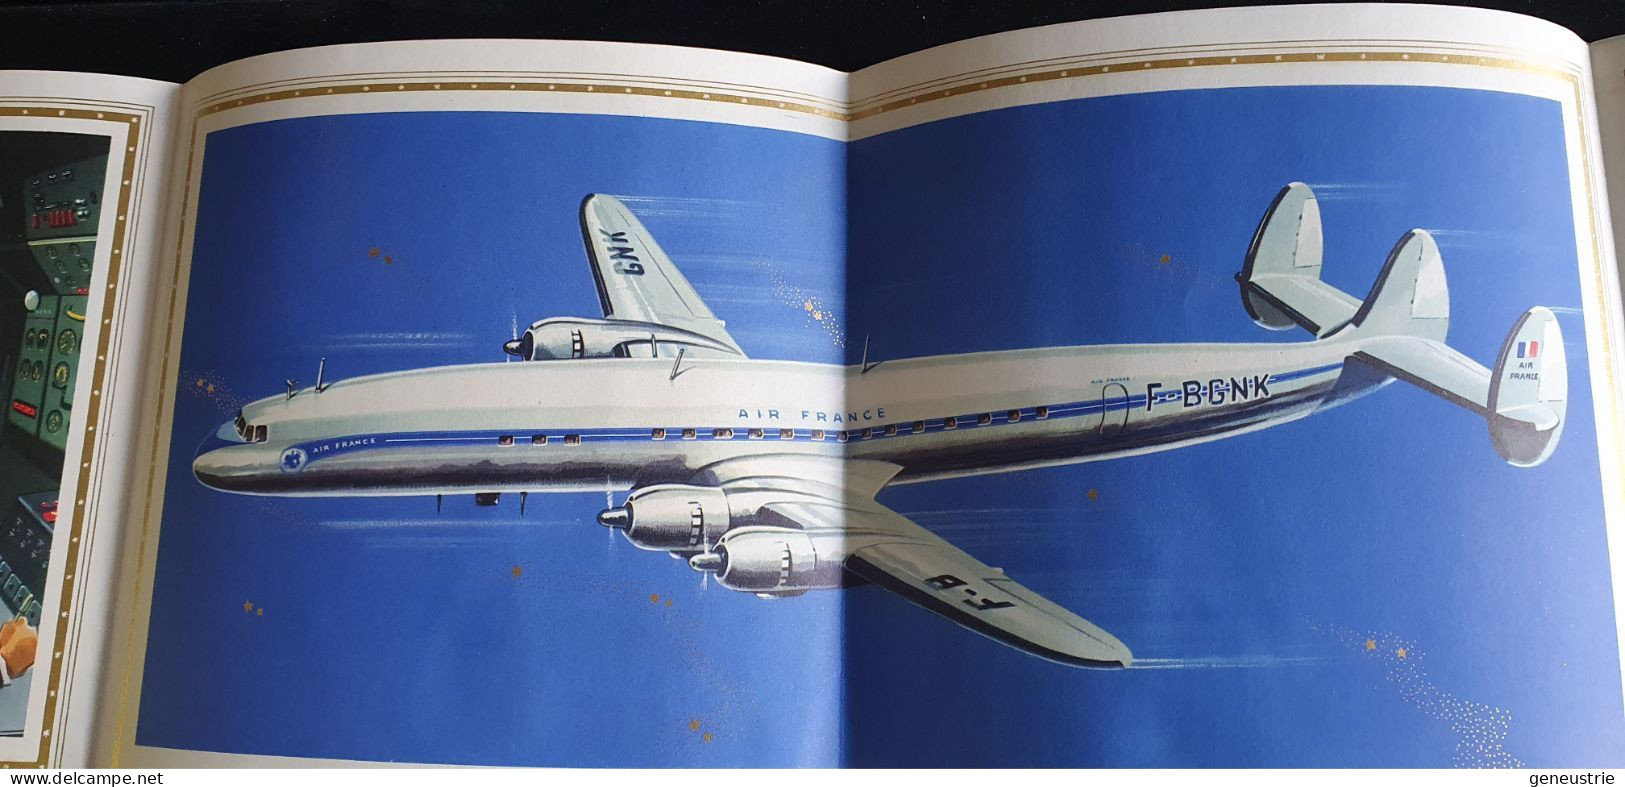 Très Belle Publicité Années 50 "Air France - Avion Super Constellation - Lockeed" - Publicités